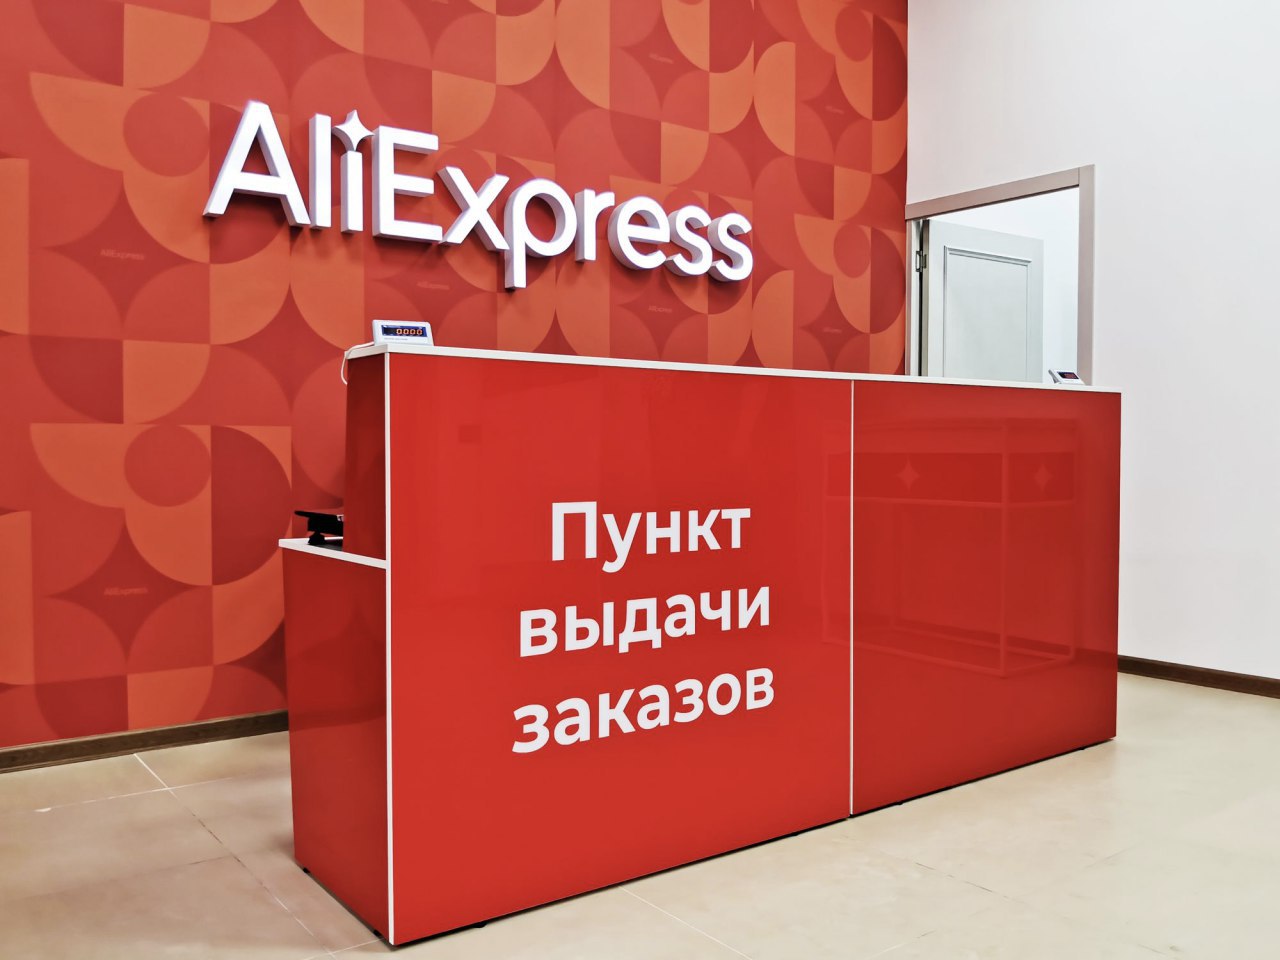 AliExpress Россия открывает пункты выдачи заказов в отделениях Почты России